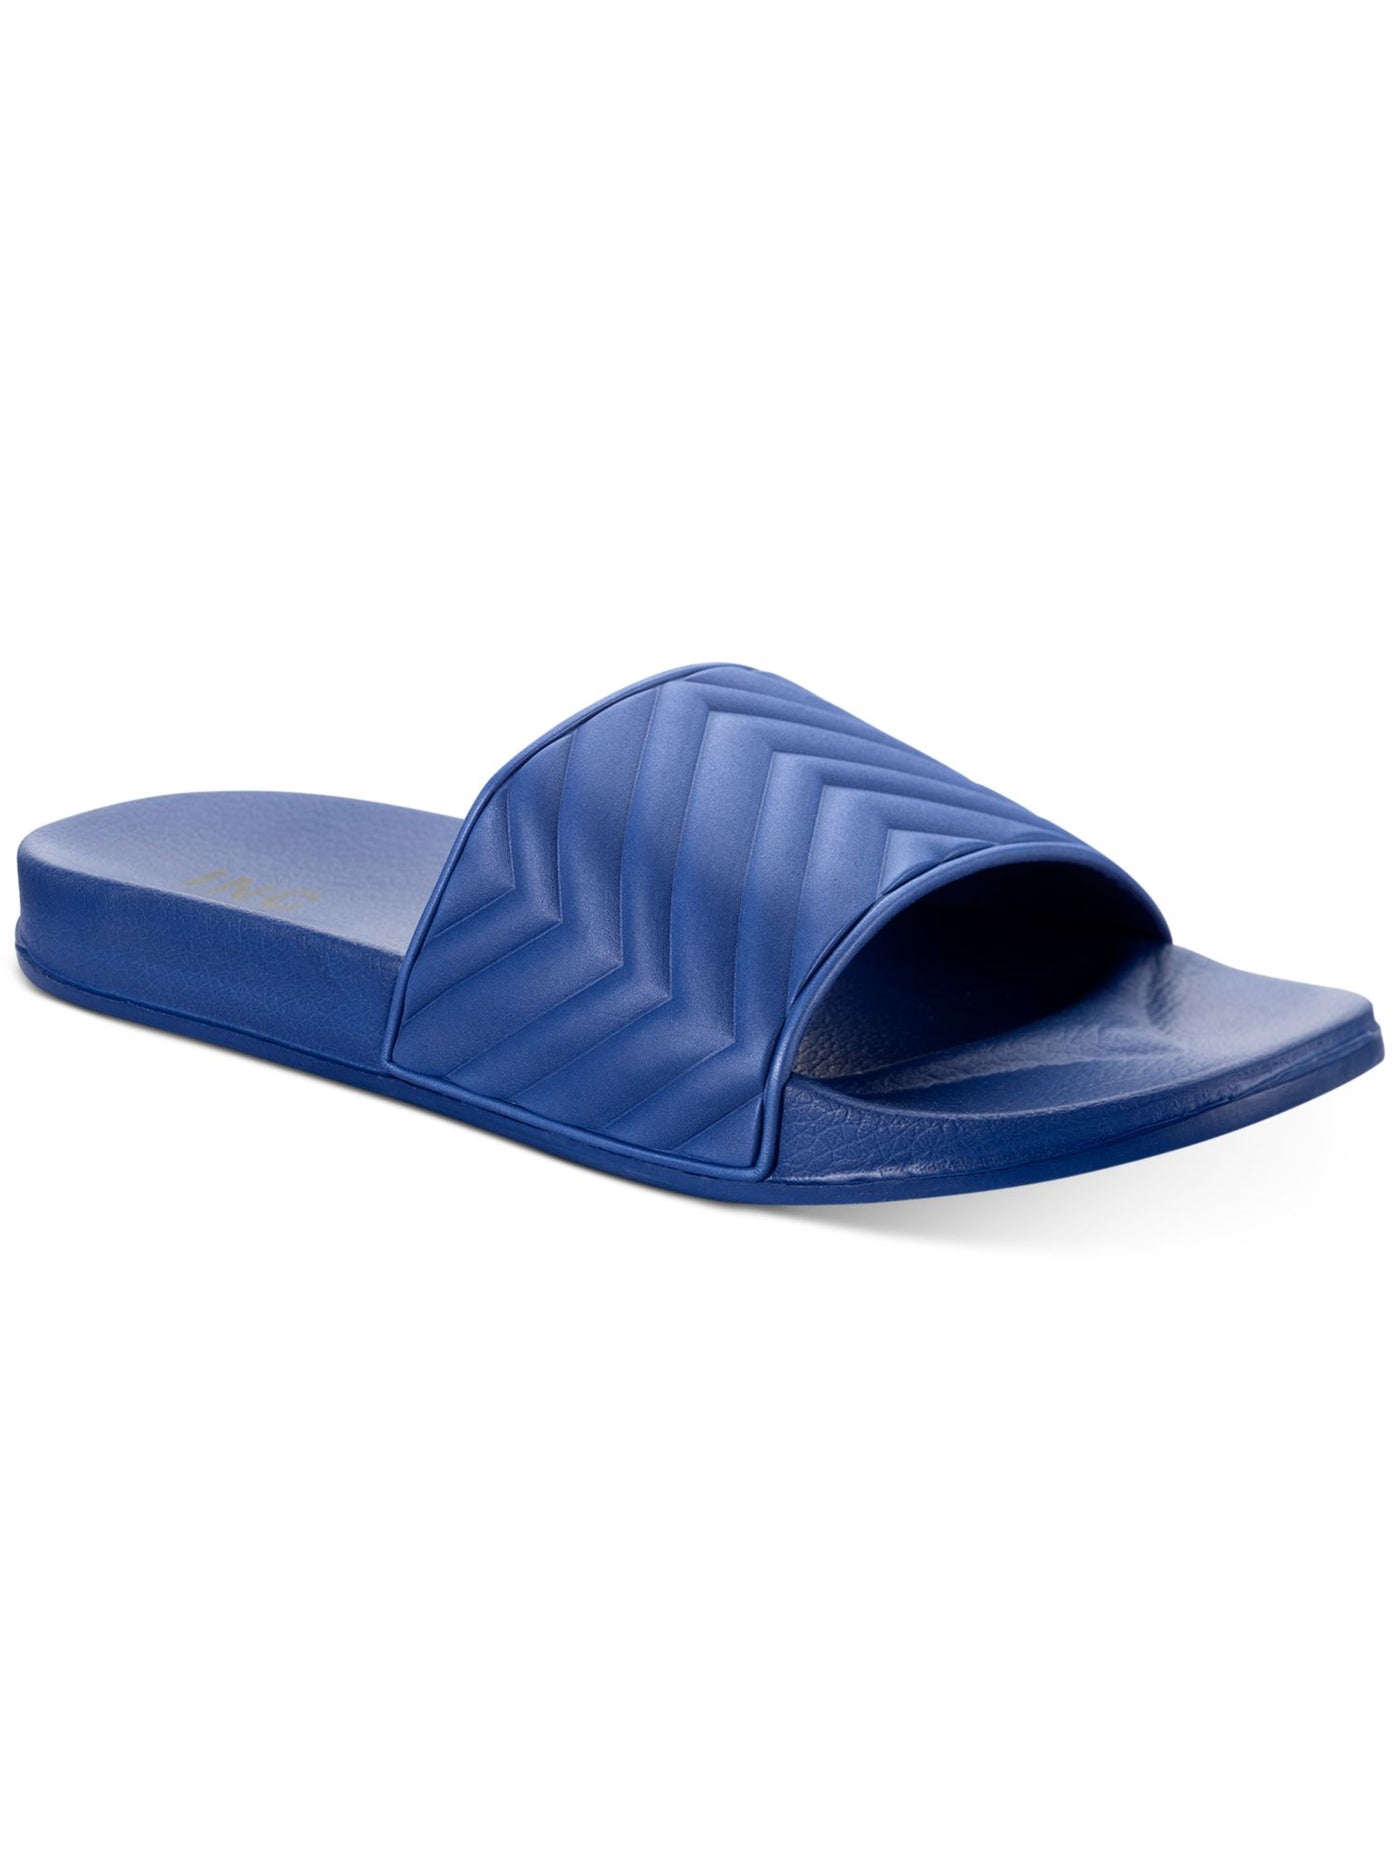 INC Mens Navy Padded Xander Open Toe Slip On Slide Sandals Shoes 13 M